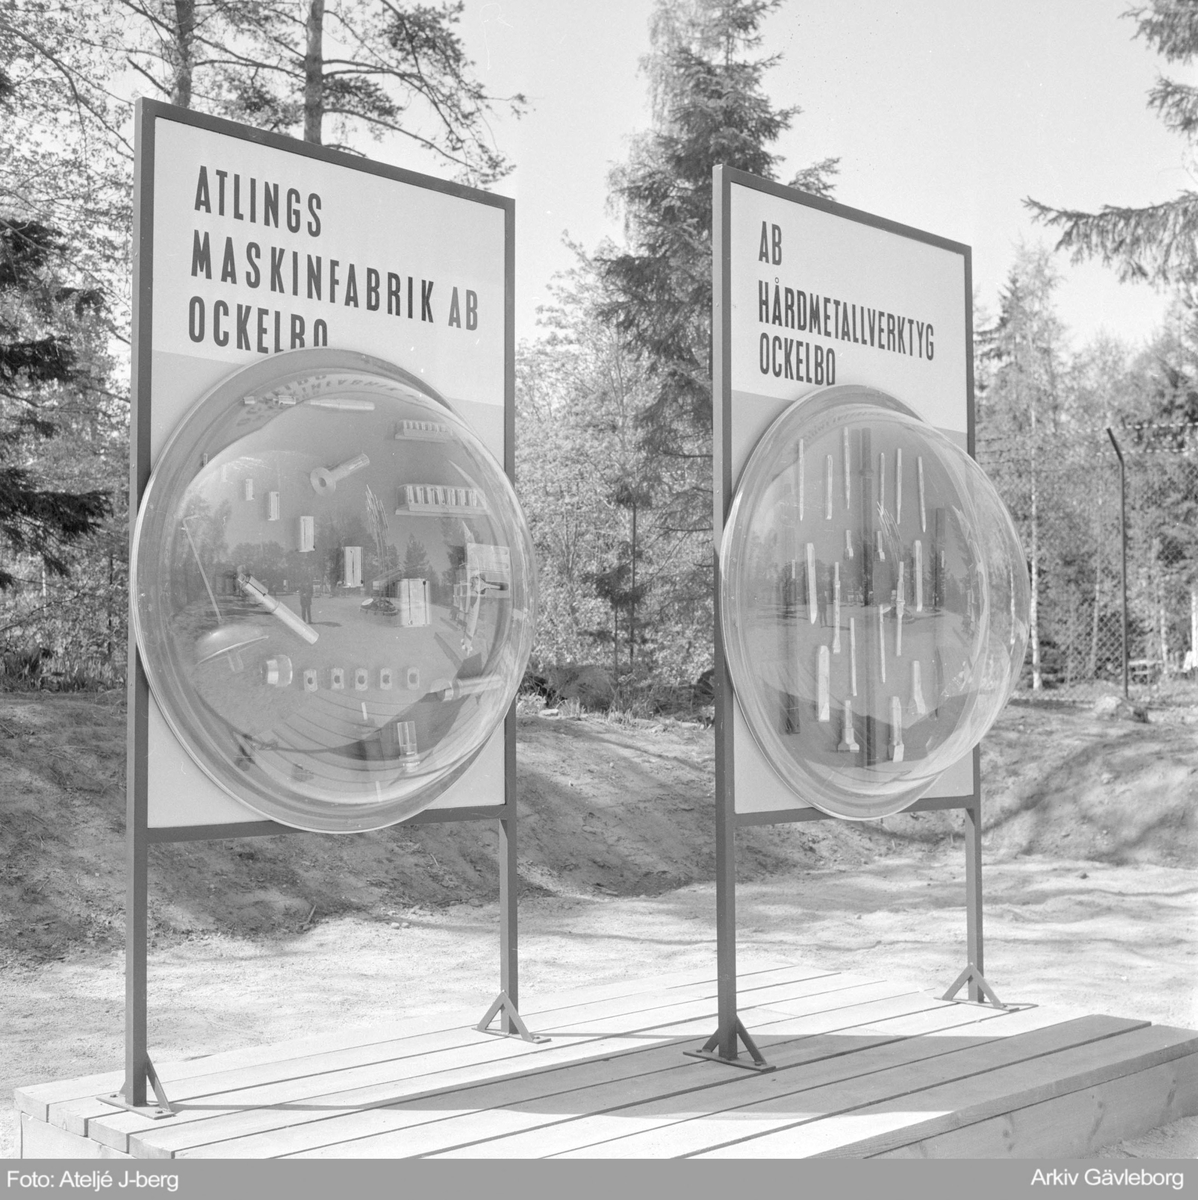 Utställning på Furuvik 1964, "Gästriklands näringsliv visar..".